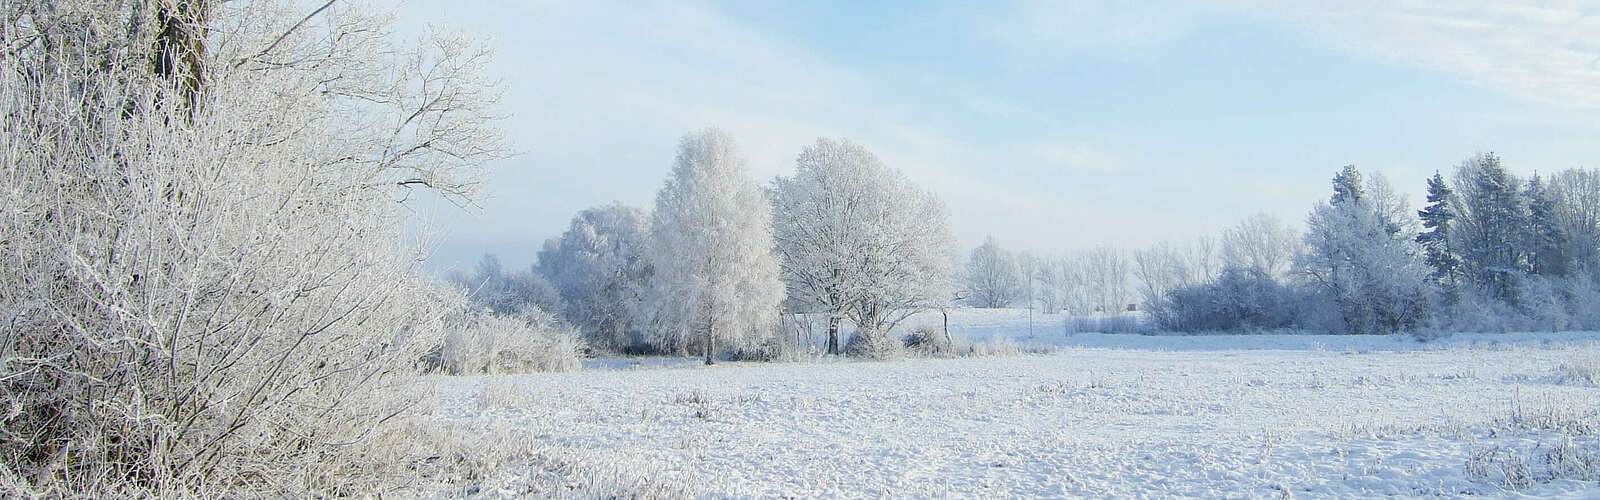 Winterlandschaft in Beelitz,
        
    

        
            Foto: Tourismusverband Fläming e.V.